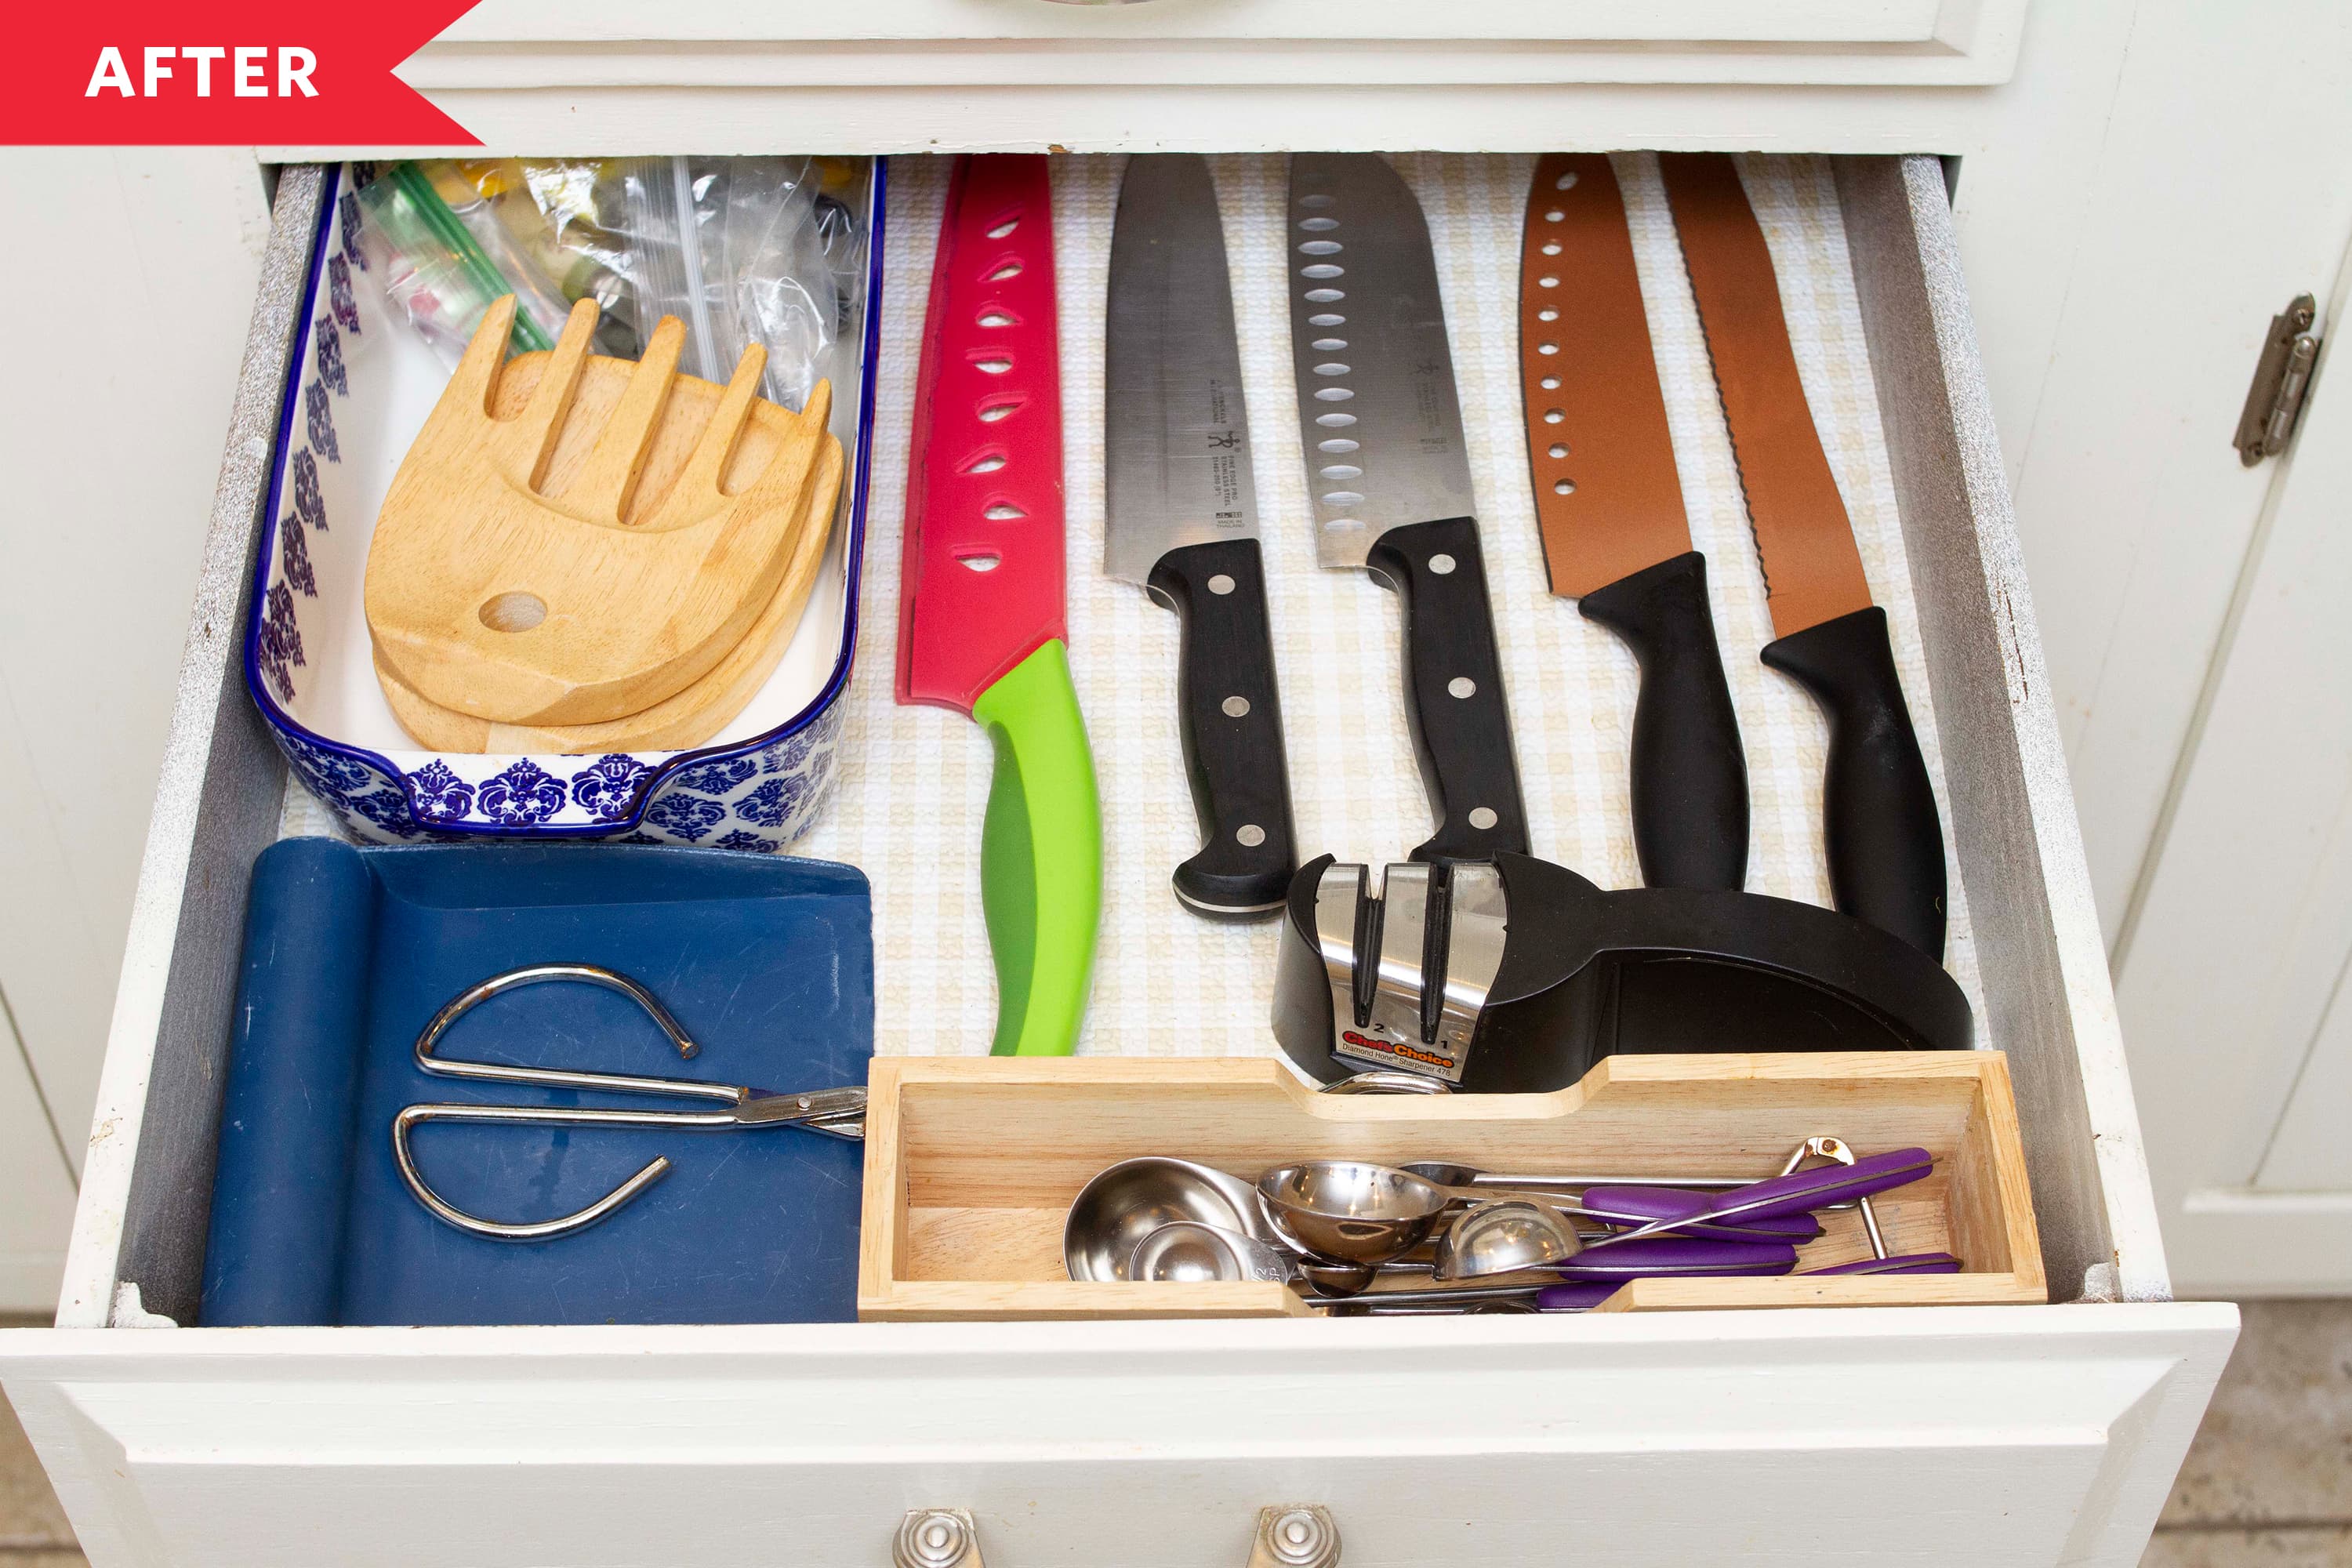 How to Organize Kitchen Utensils